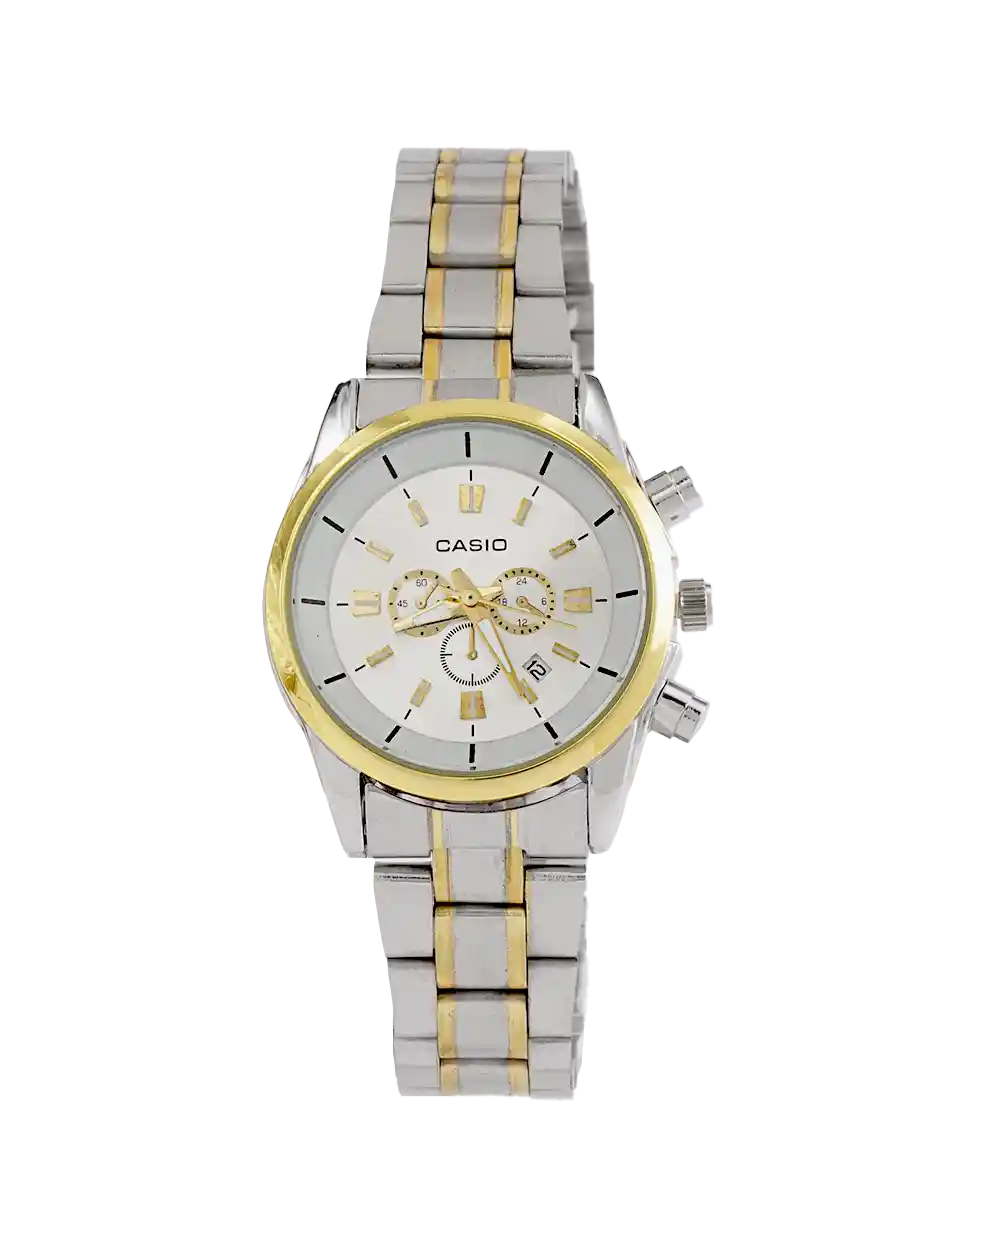 خرید ساعت مچی زنانه کاسیو CASIO مدل 1919 بند استیل رنگ نقره ای طلایی با صفحه ی سفید قیمت 380 هزارتومان به همراه ارسال رایگان و جعبه ی کادویی